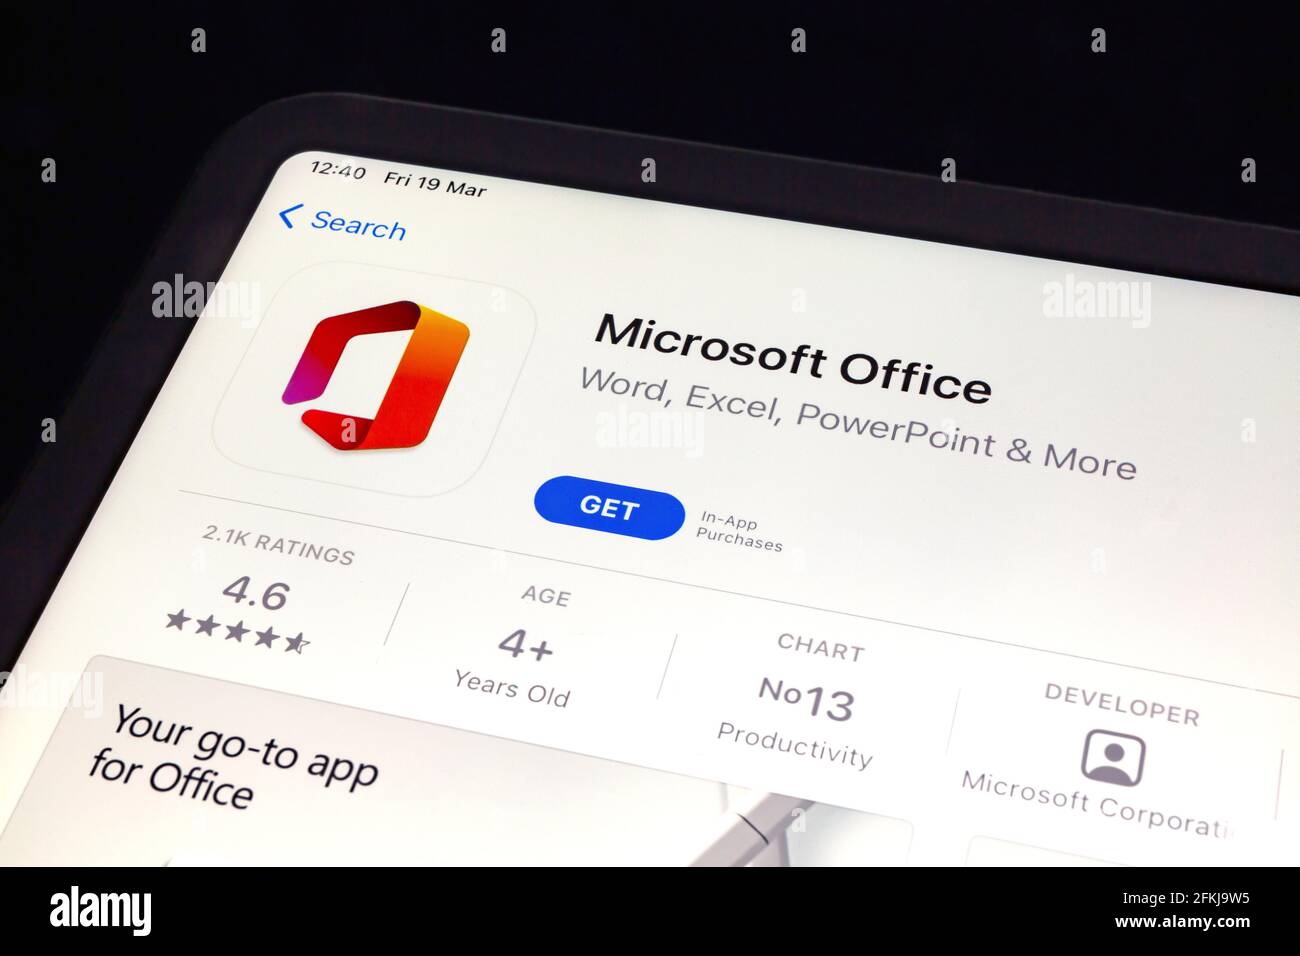 Ostersund, Schweden - 19. März 2021: Microsoft Office App. Microsoft Office ist eine Office-Suite, die von Microsoft erstellt wurde. Stockfoto